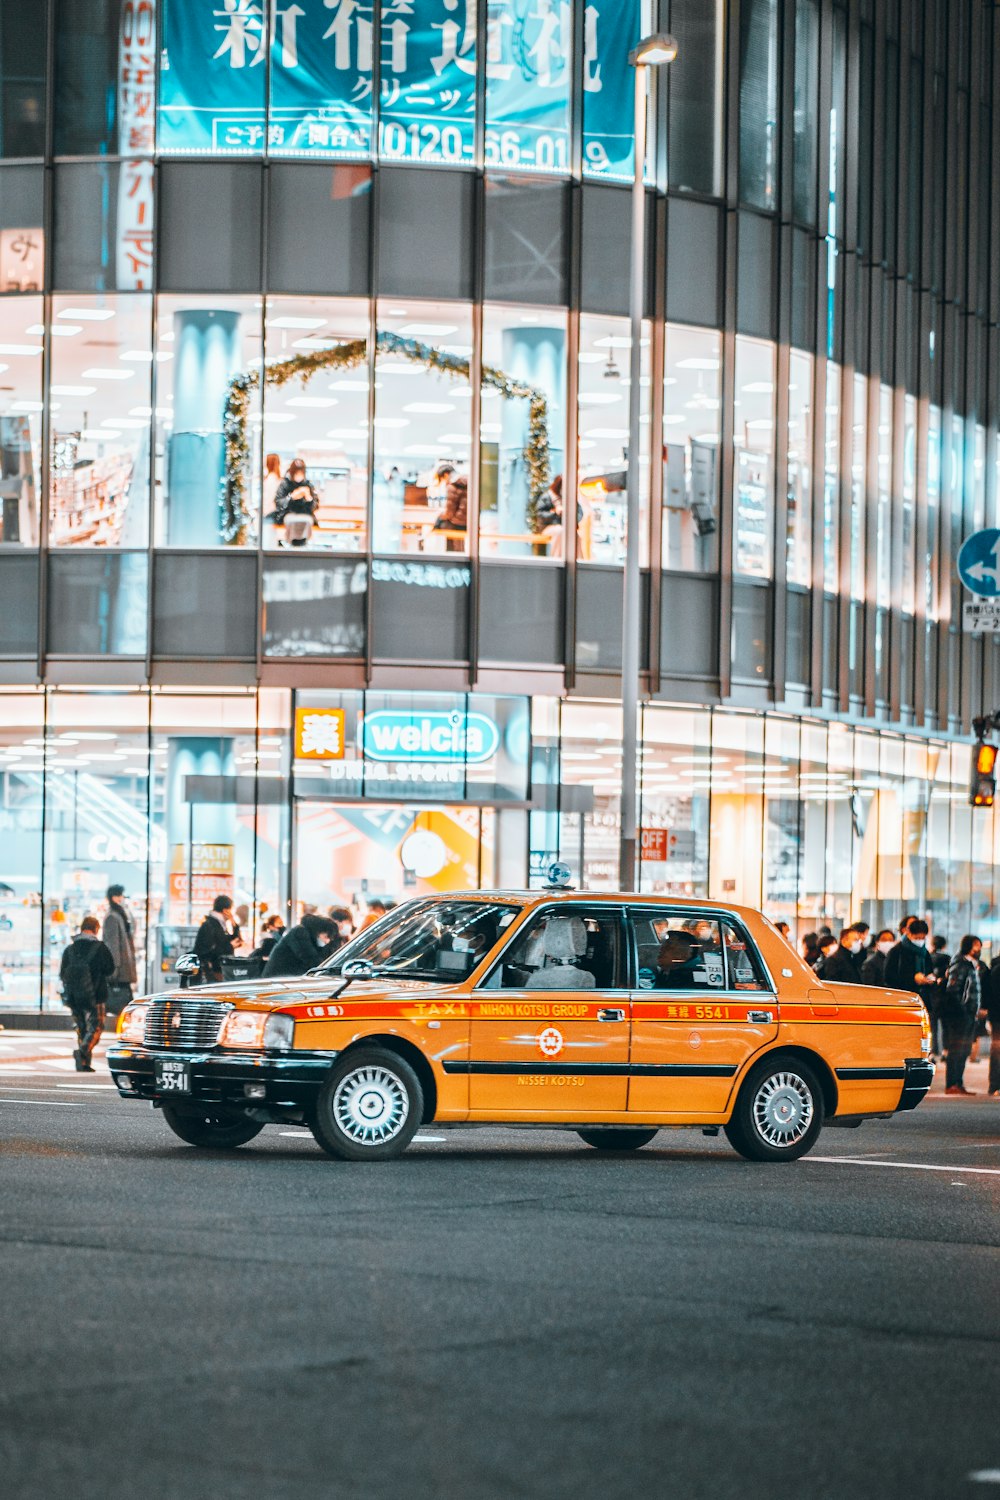 Un taxi naranja conduciendo por una calle por la noche